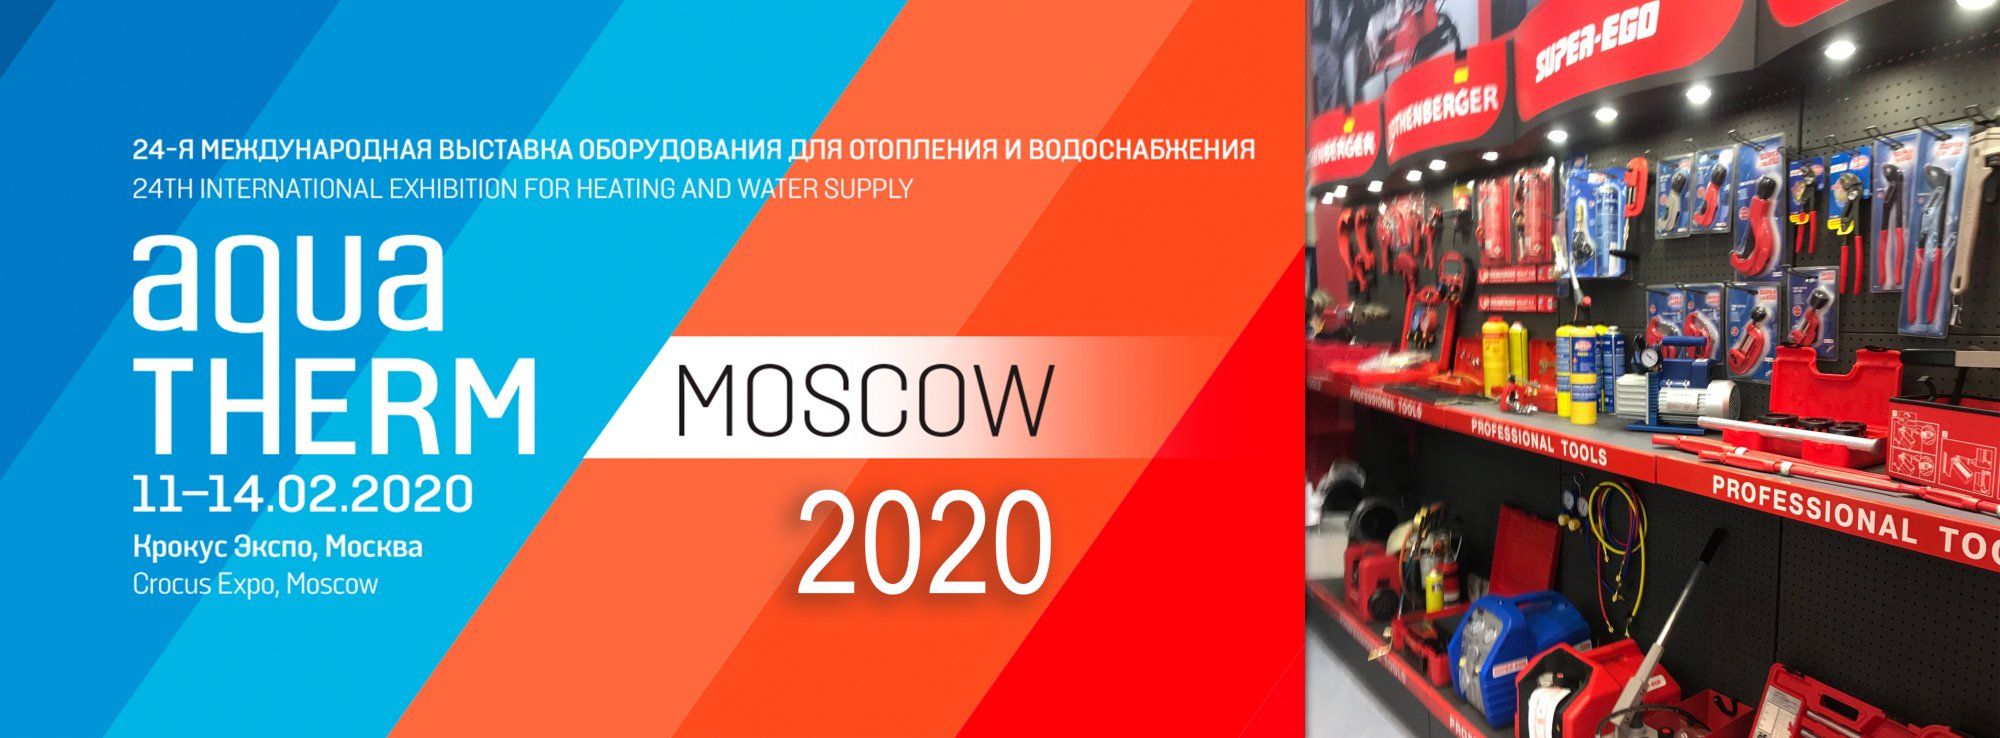 Участие в выставке AQUATHERM Moscow 2020